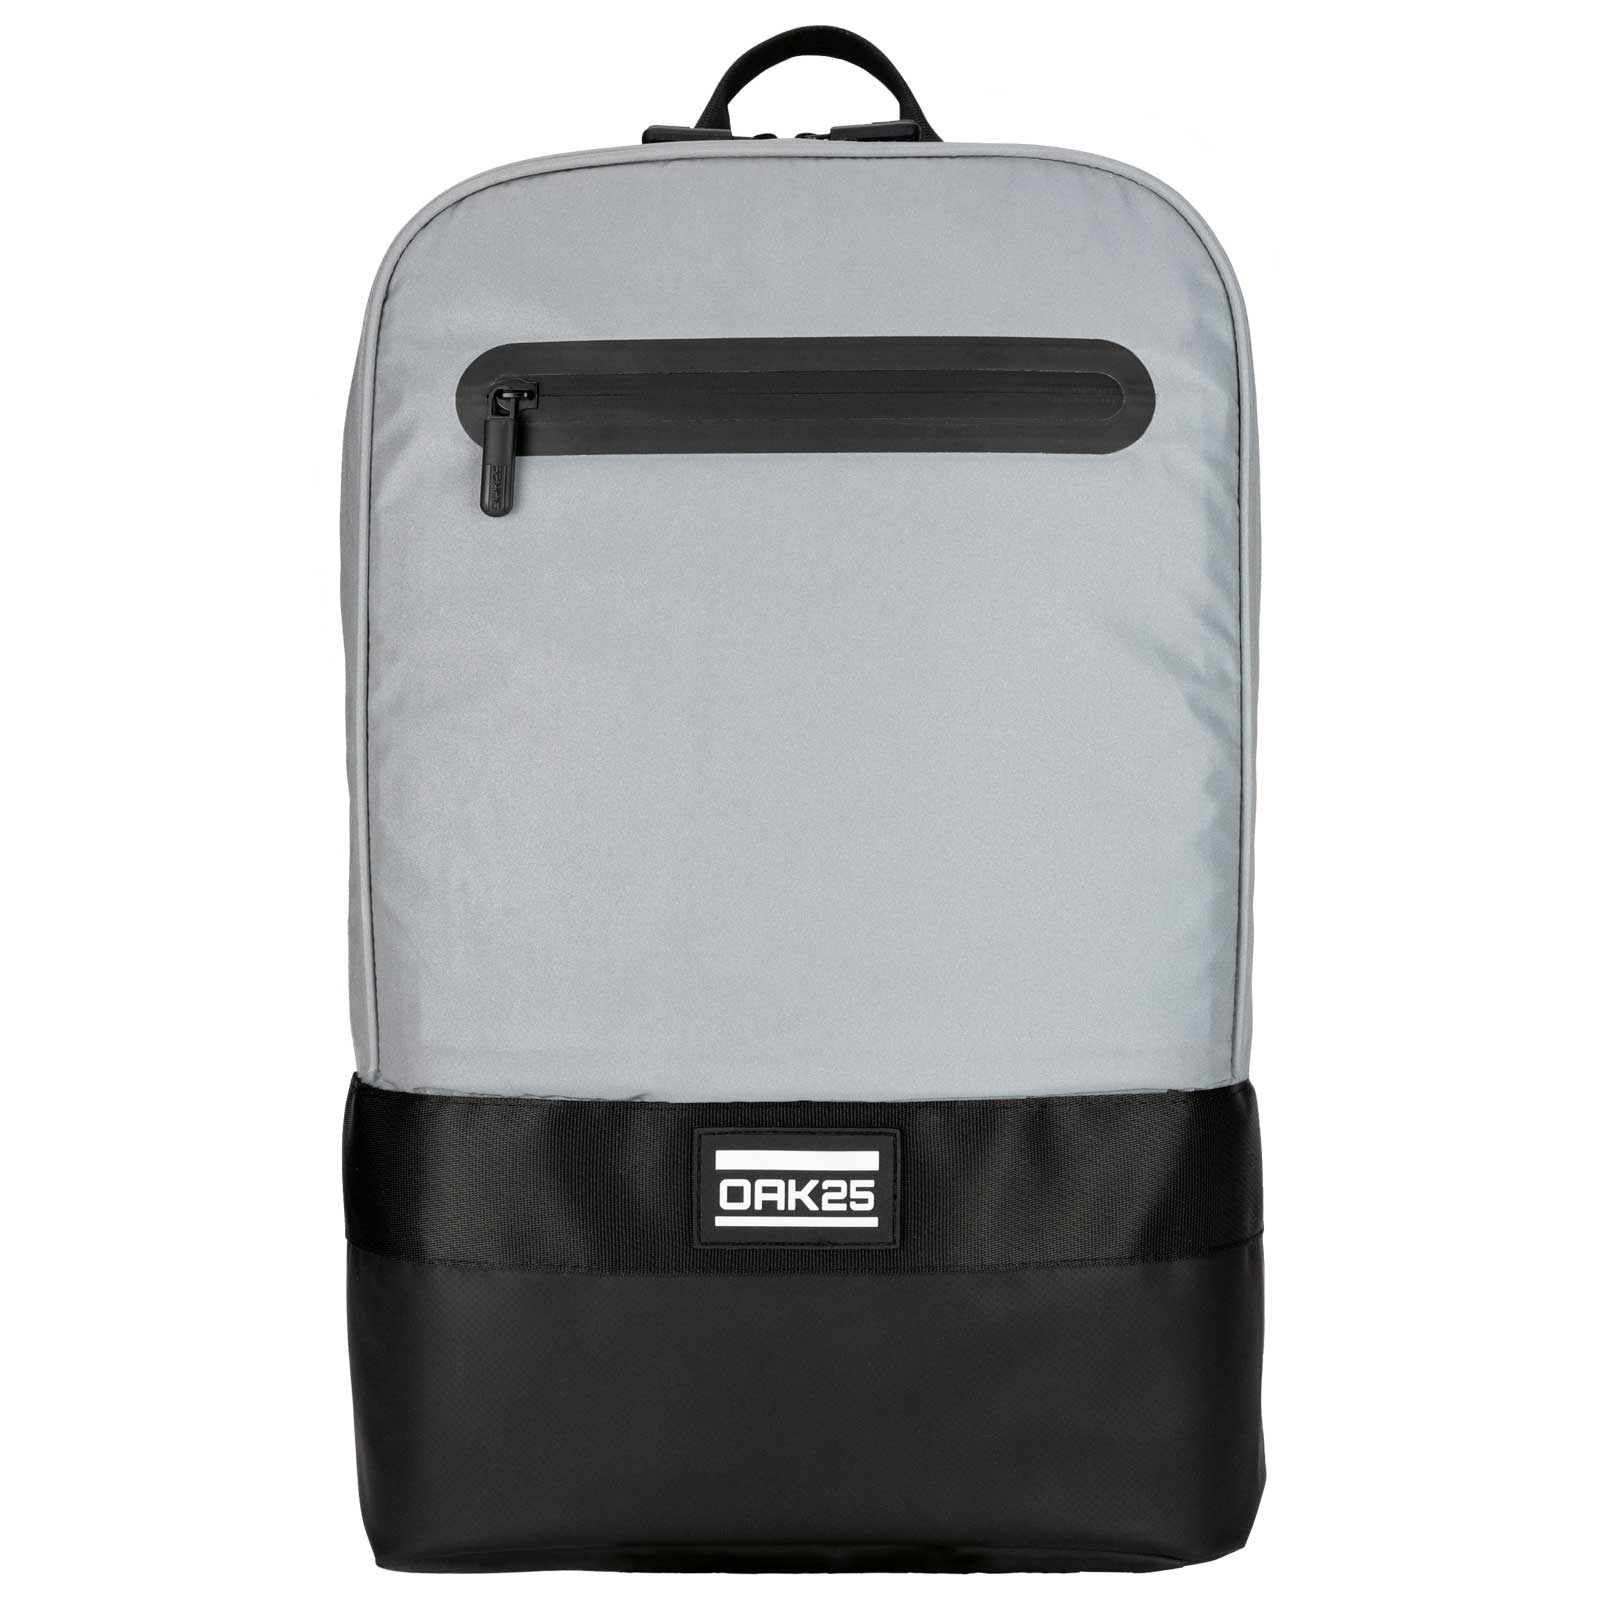 Produktbild von OAK25 Luminant Bag 19L Rucksack - reflektierend/schwarz